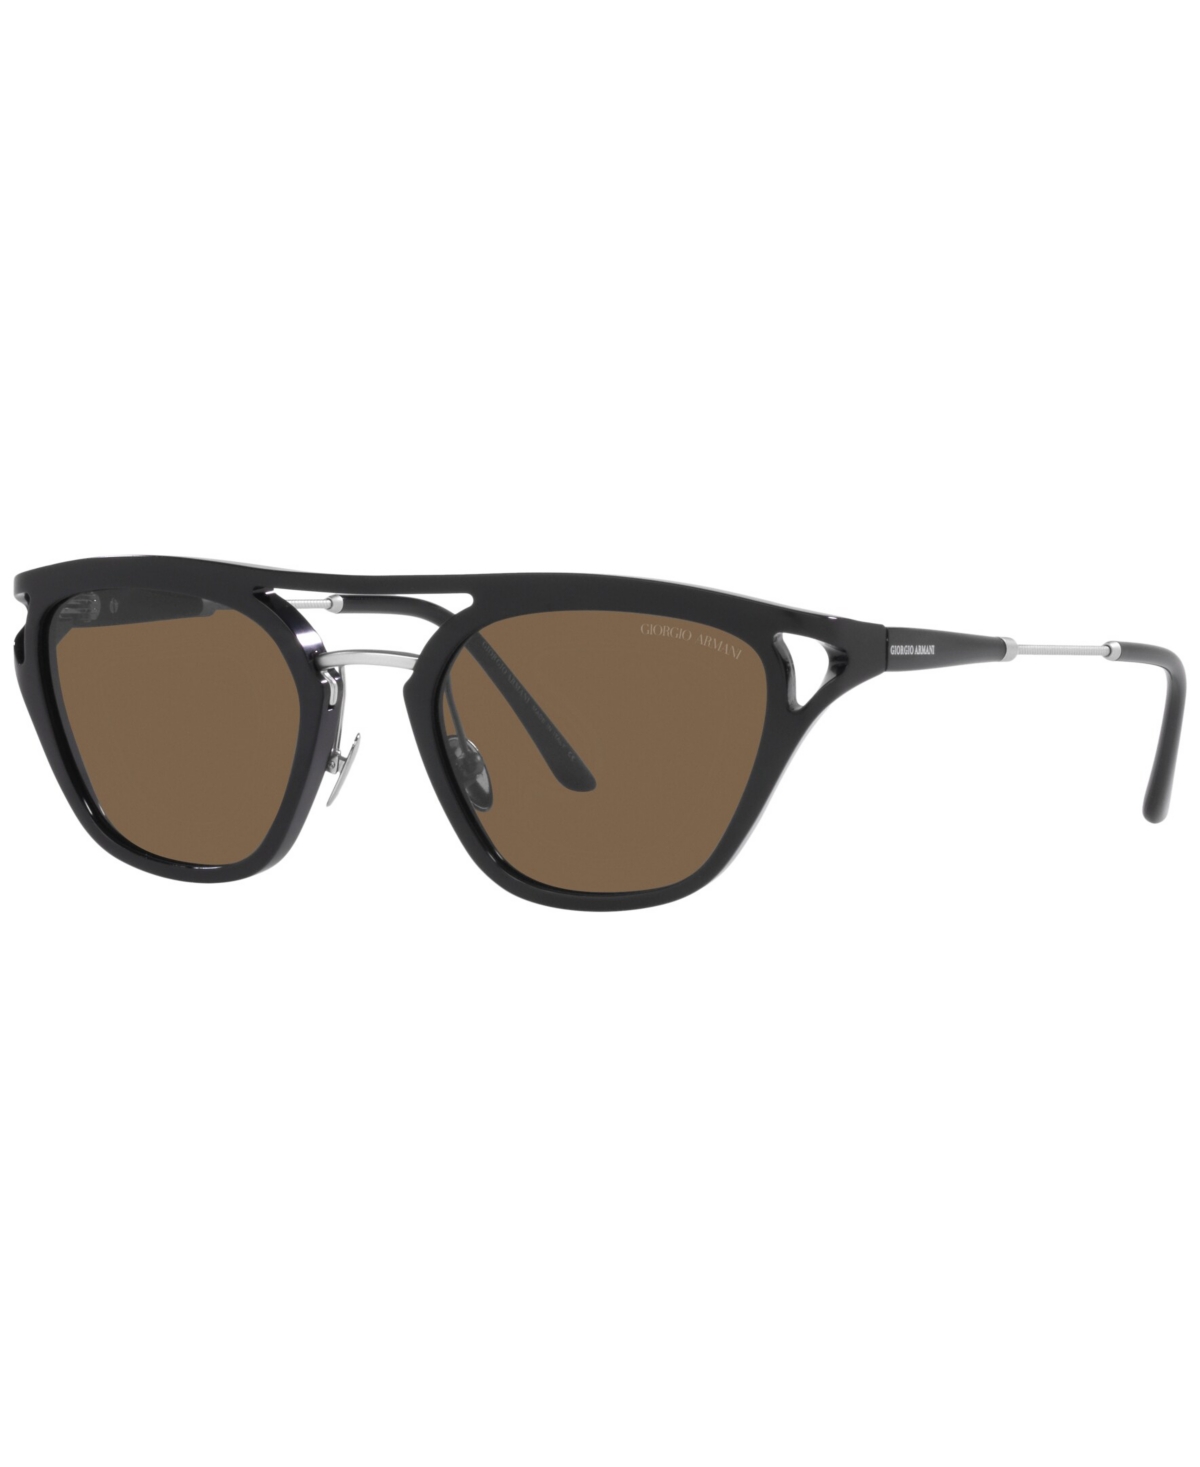 Giorgio Armani Men's Sunglasses, Ar8158 51 In Black